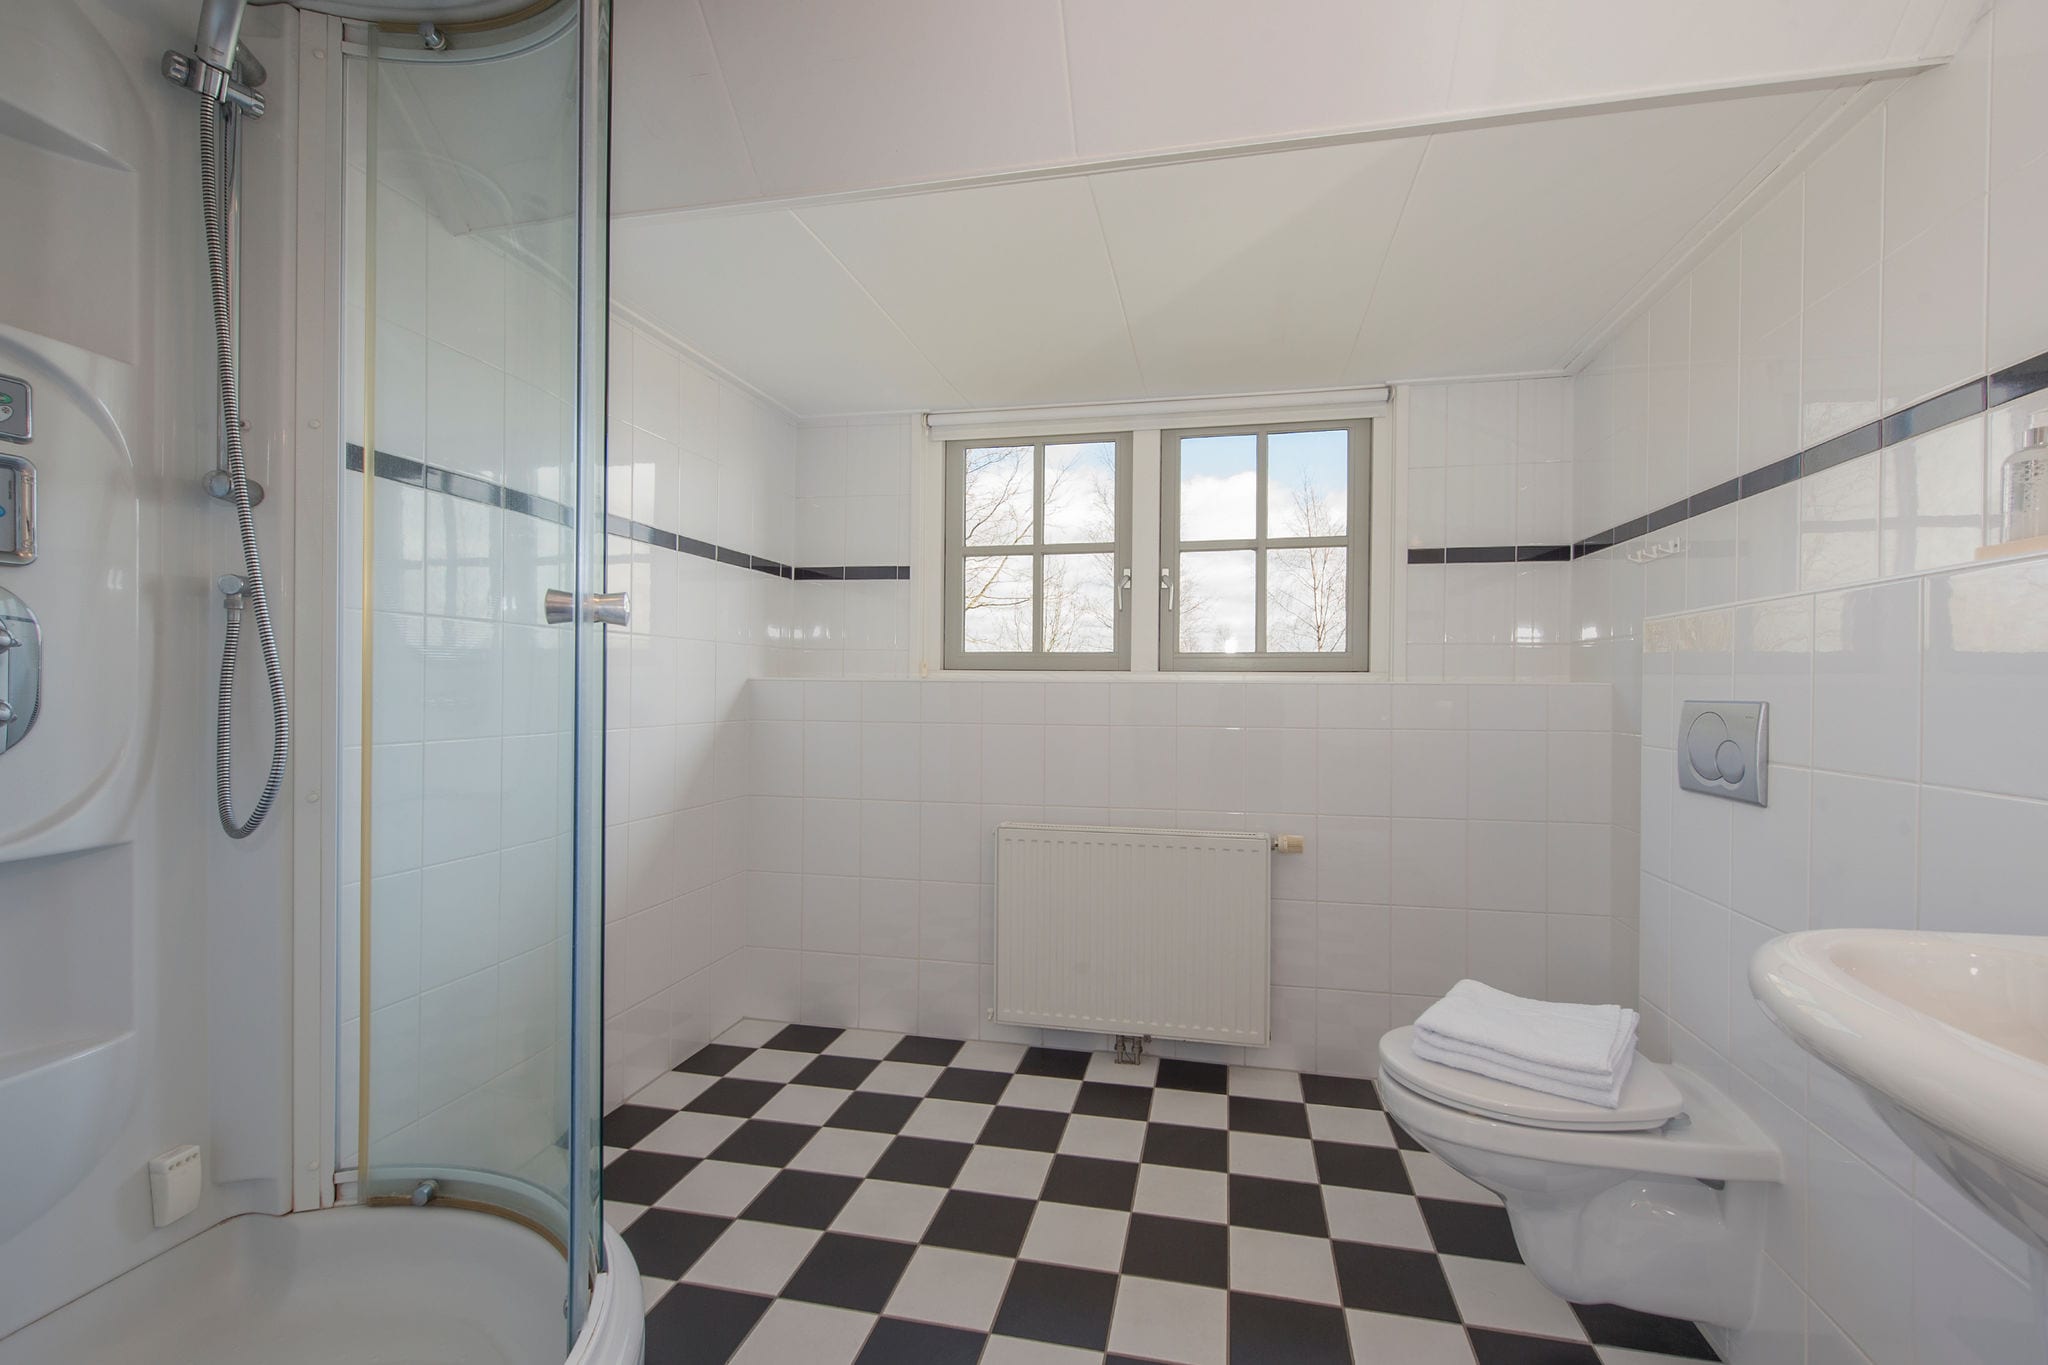 Vrijstaand vakantiehuis met twee badkamers 2km van Appelscha